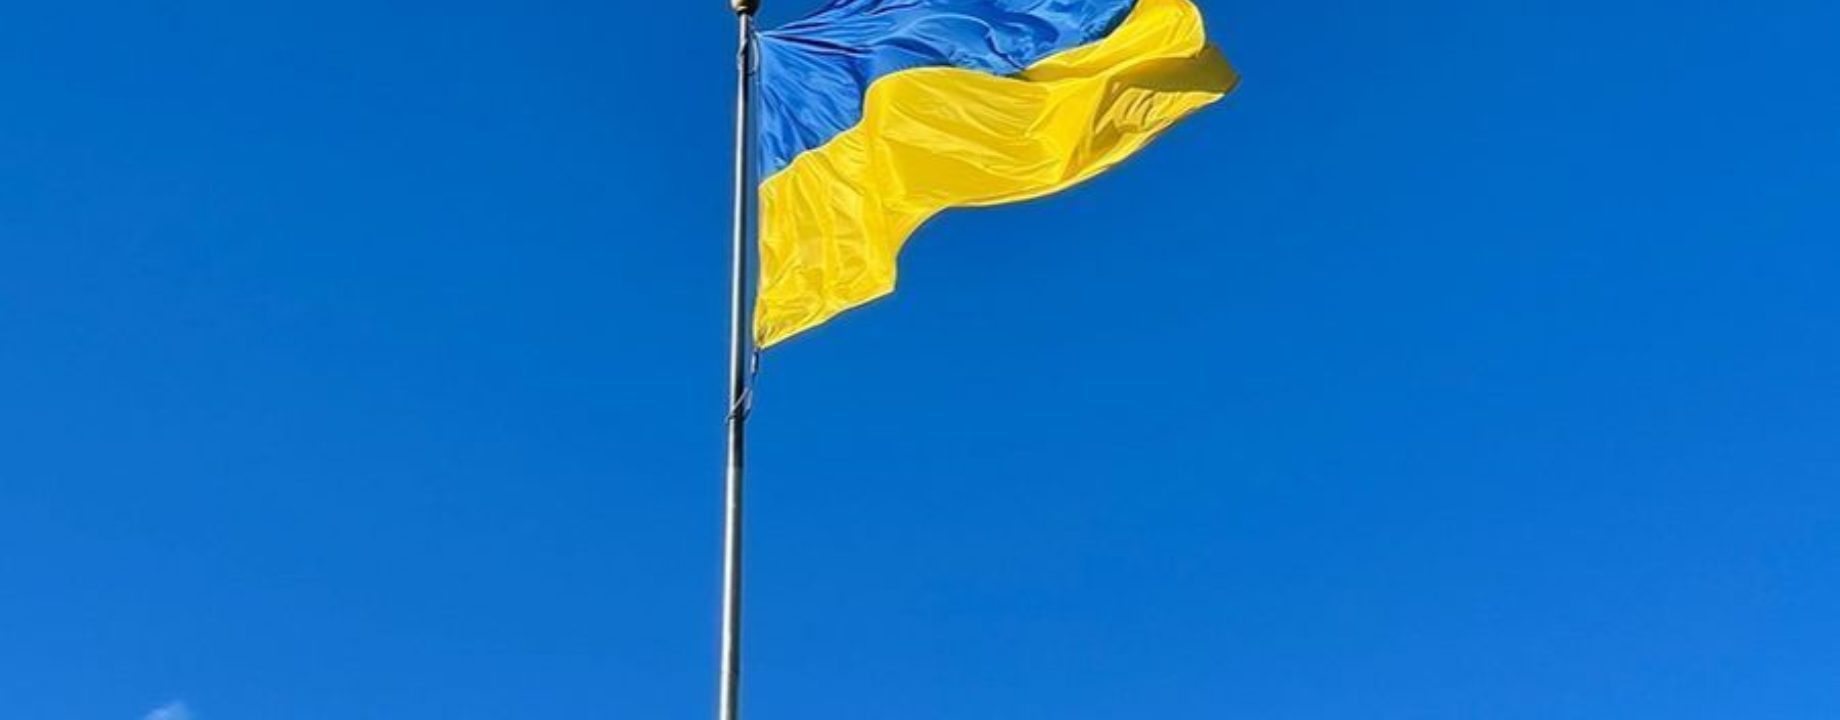 ukrán lobpgó